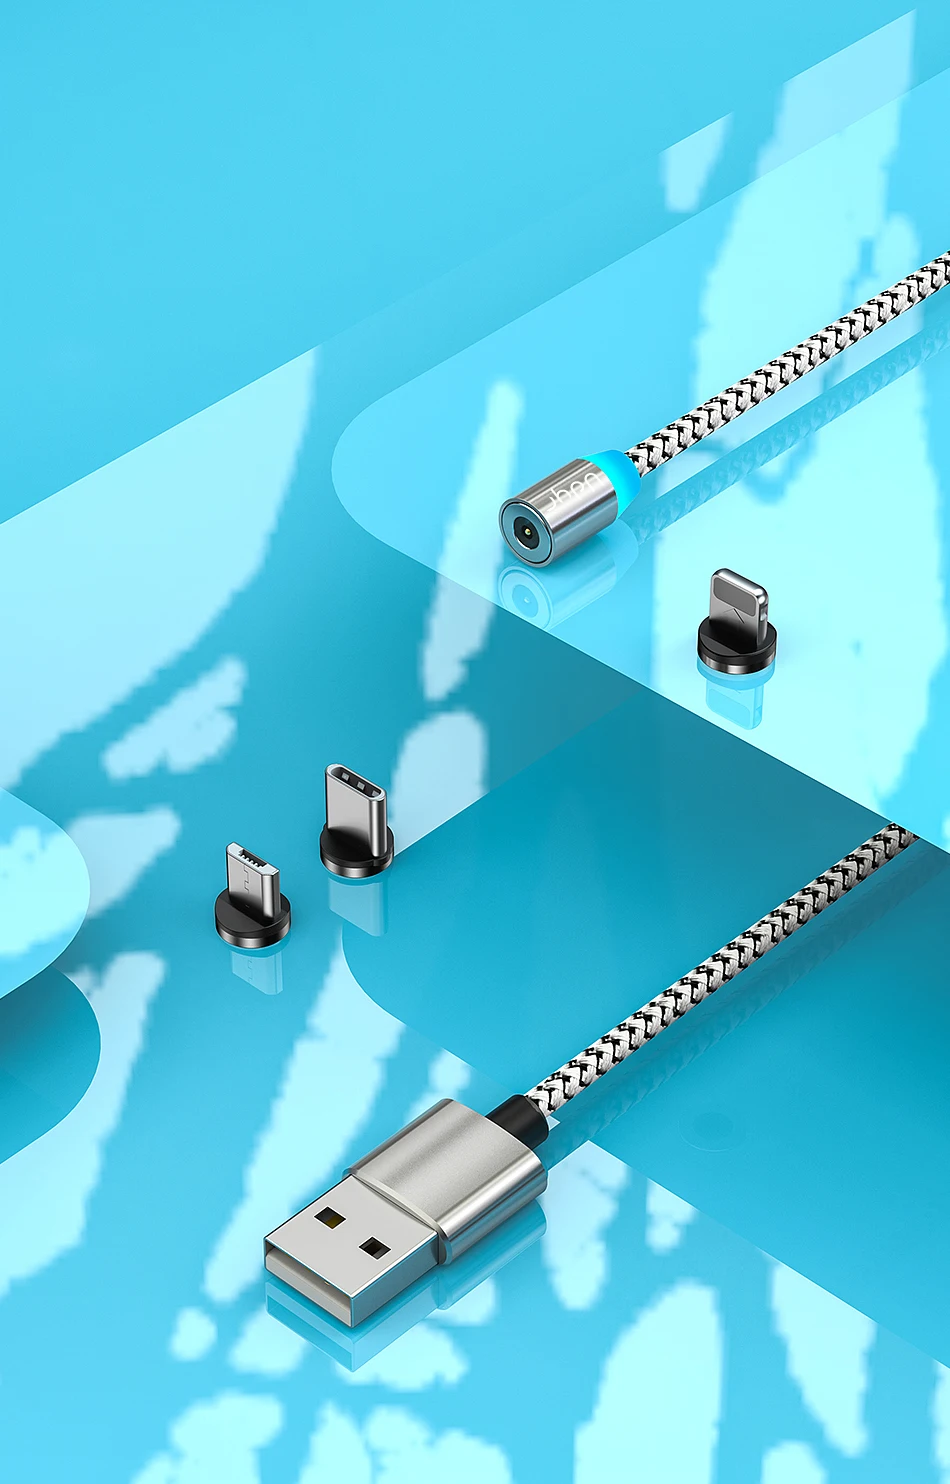 Udyr Магнитный Micro usb type C кабель для iPhone Xiaomi Android мобильный телефон Быстрая зарядка USB кабель магнит зарядное устройство провод шнур